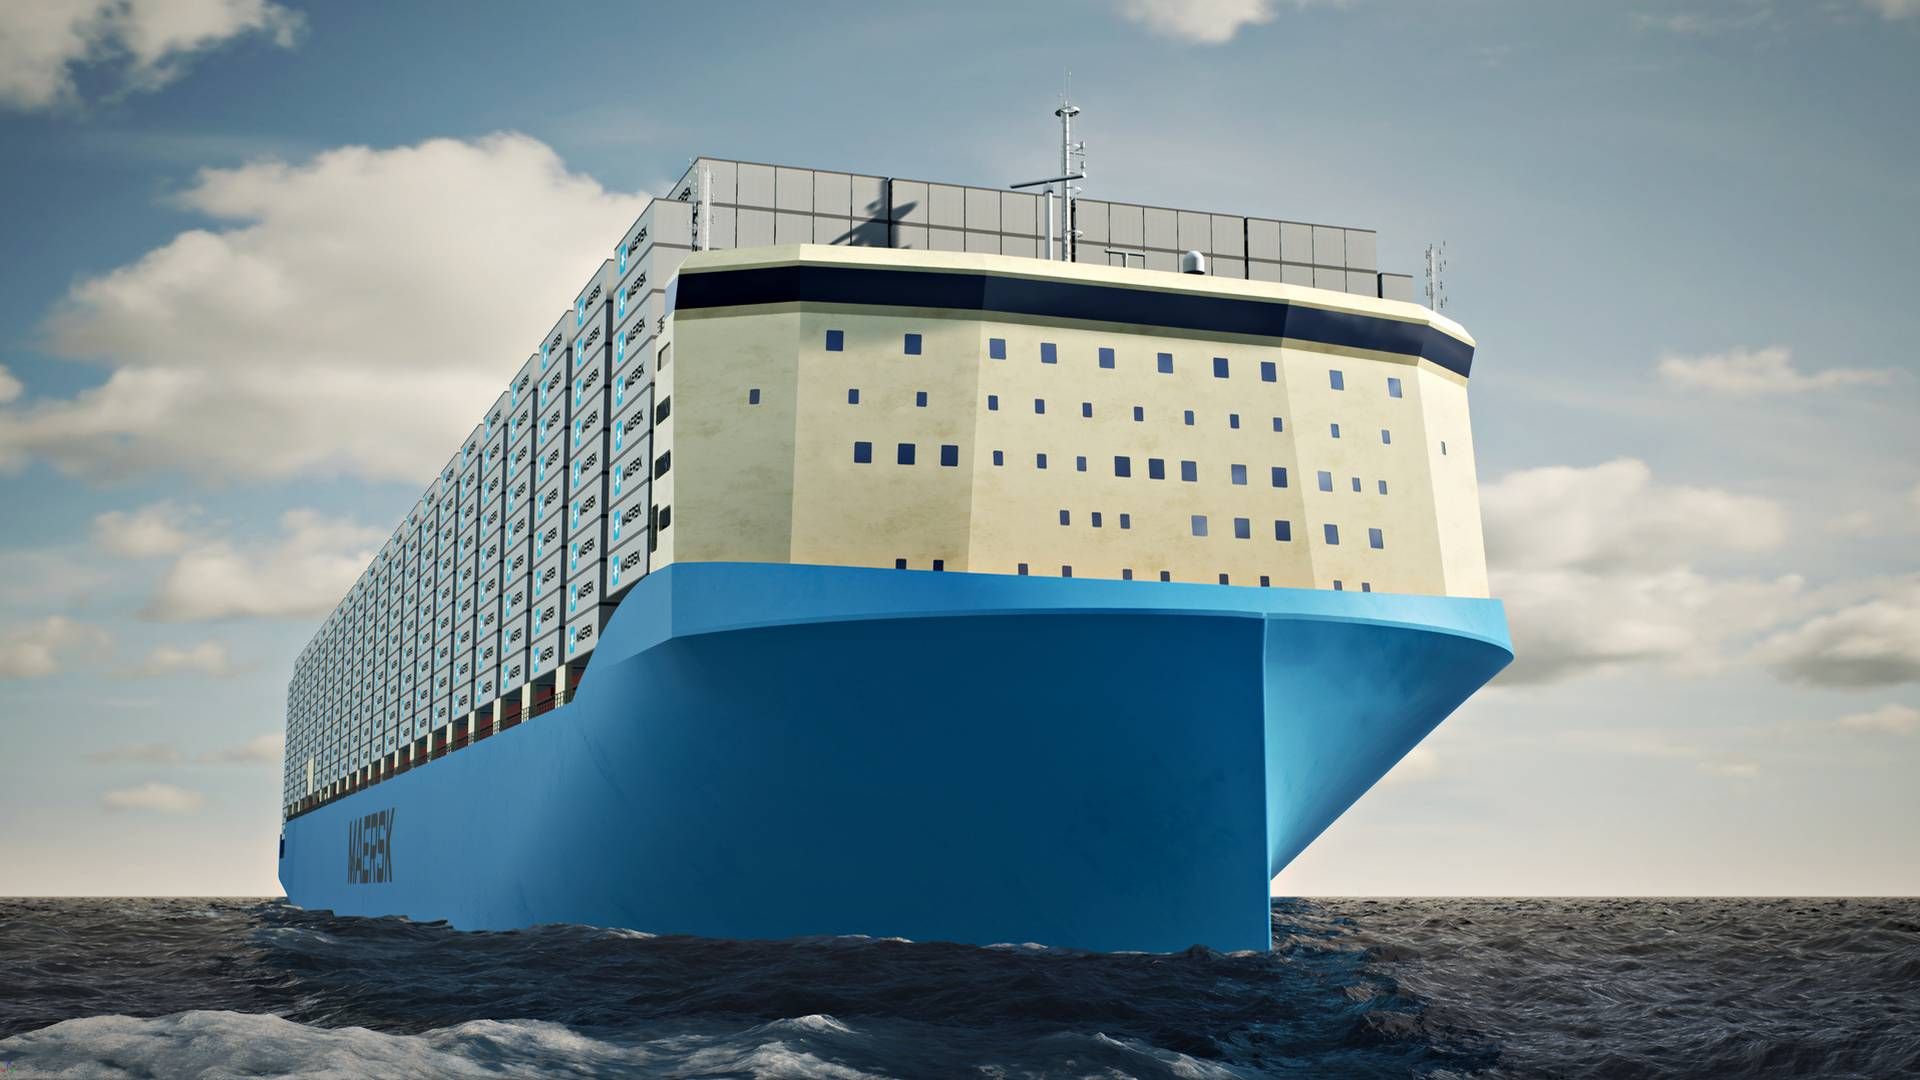 Internt i Maersk kaldes det nye skibsdesign for den største nytænkning siden Maersk lancerede triple E-skibene med en kapacitet på 18.000 teu i 2013. | Foto: Maersk